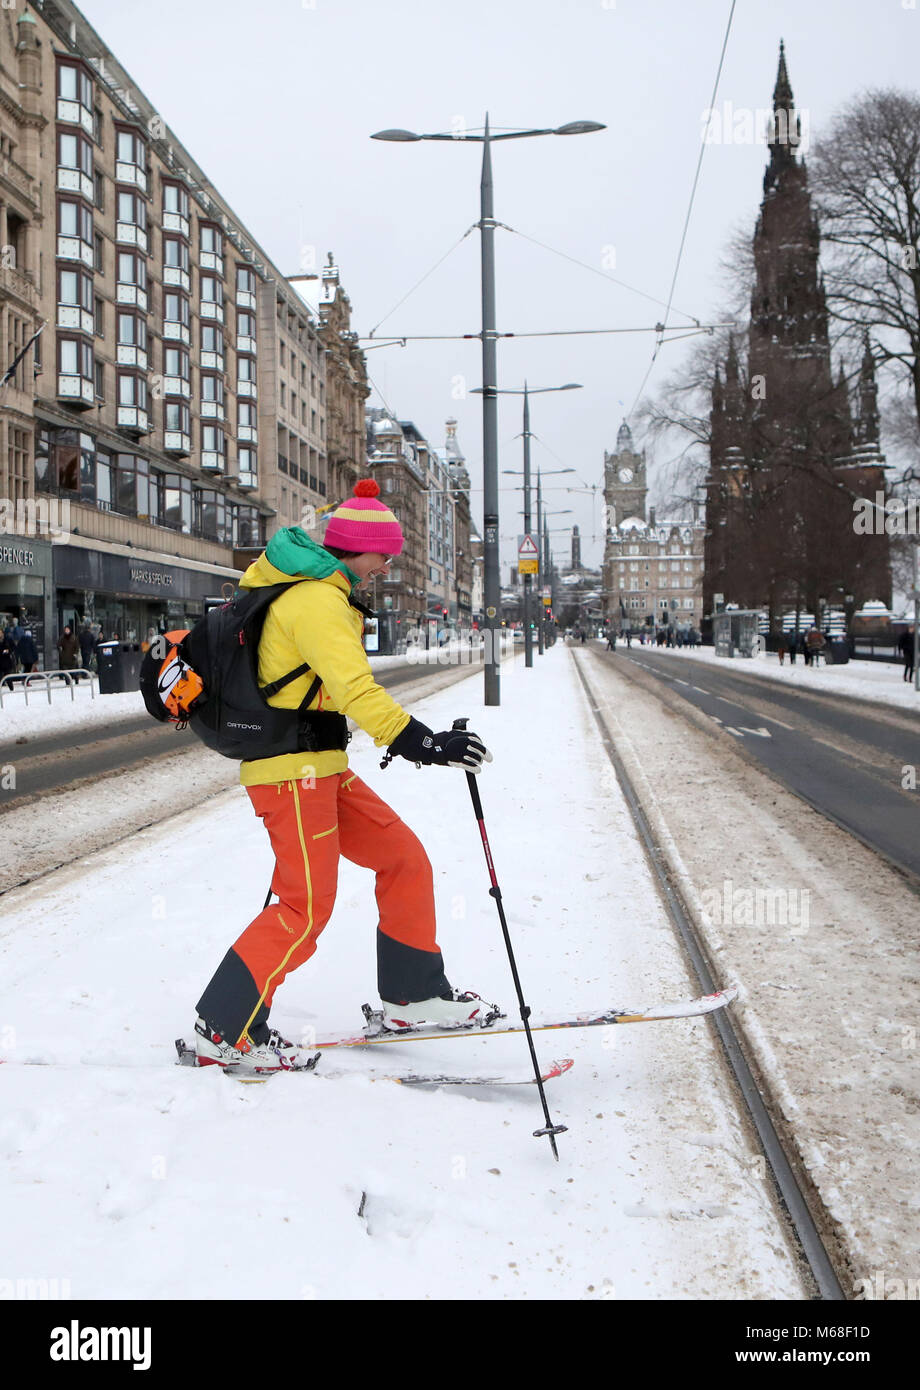 Andrea 79 Ski alpin le long de Princes Street d'Édimbourg, que storm Emma, roulant en provenance de l'Atlantique, semble prêt à affronter la bête de l'est fait froid la Russie - de l'air généralisée à l'origine de nouvelles chutes de neige et températures amer. Banque D'Images